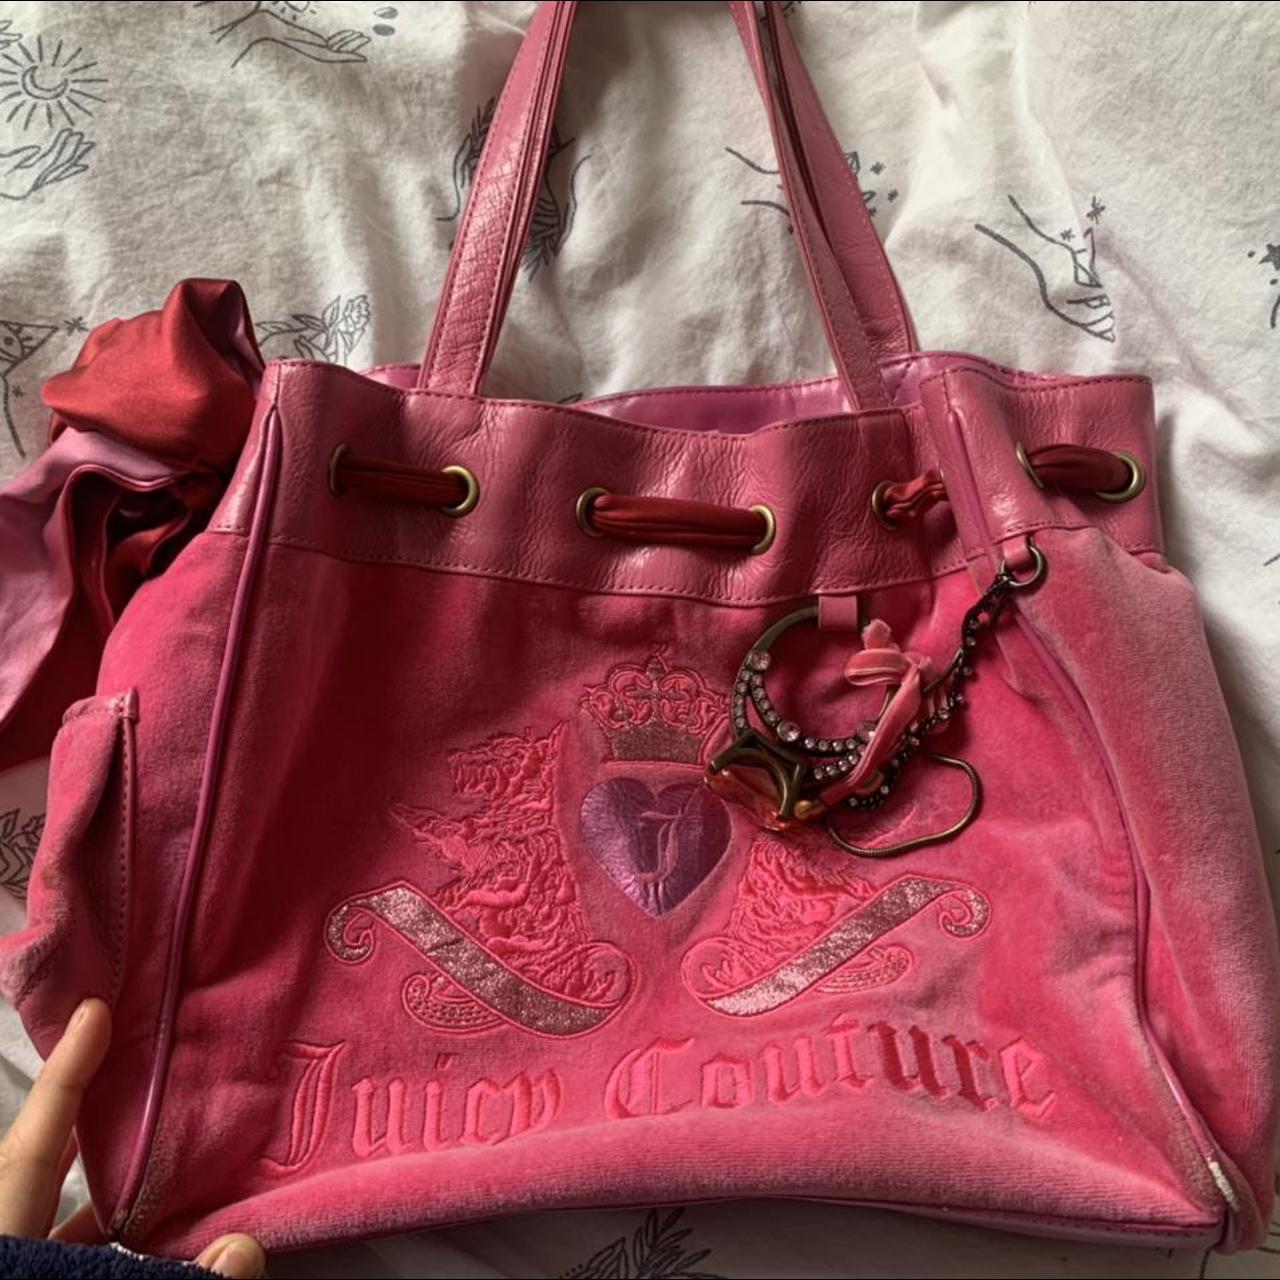 WANT SOLD Pink vintage juicy couture shoulder bag... - Depop